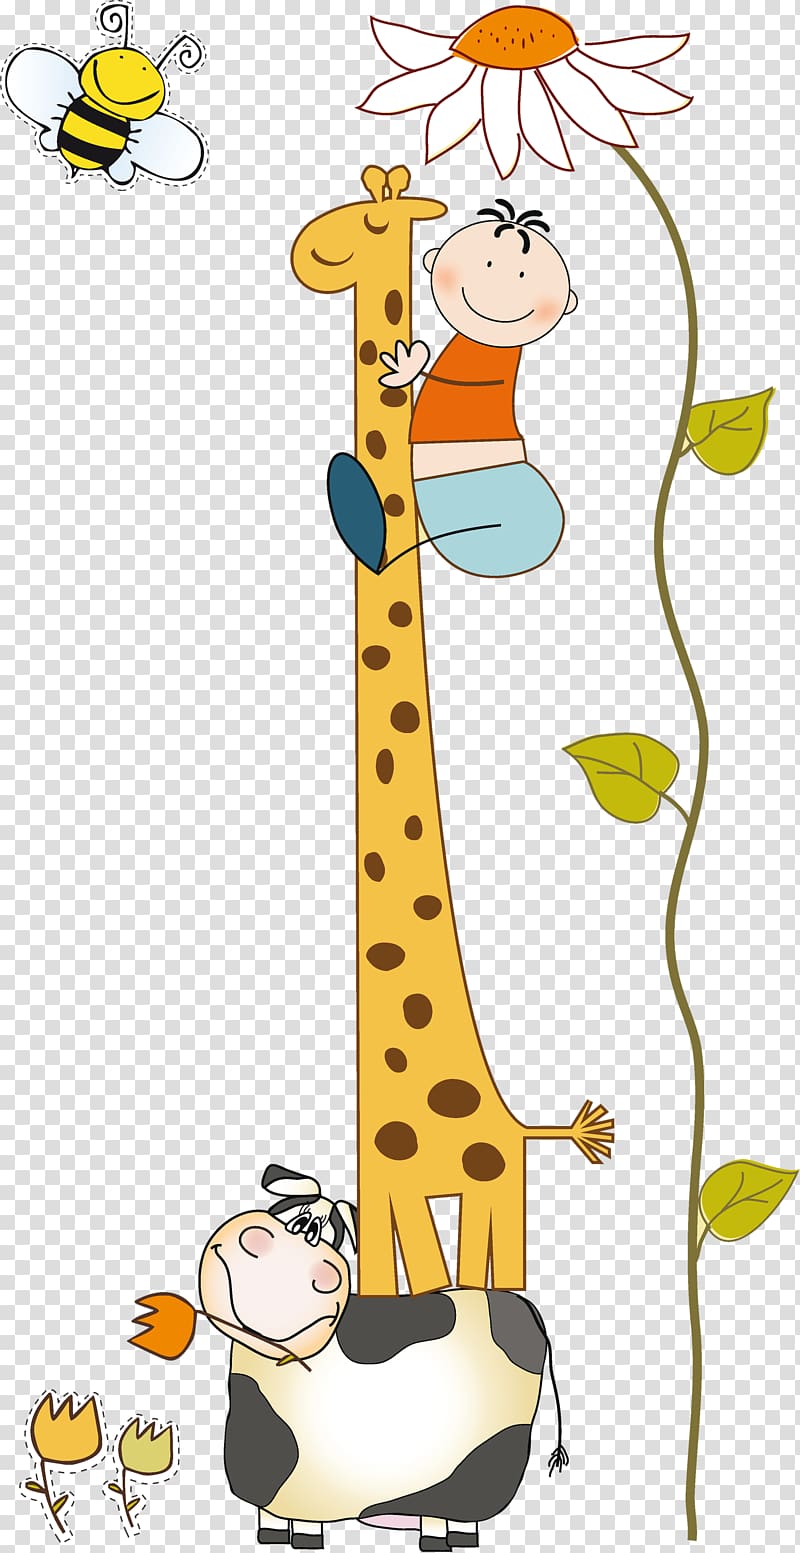 Baby Giraffes Cartoon , giraff transparent background PNG clipart